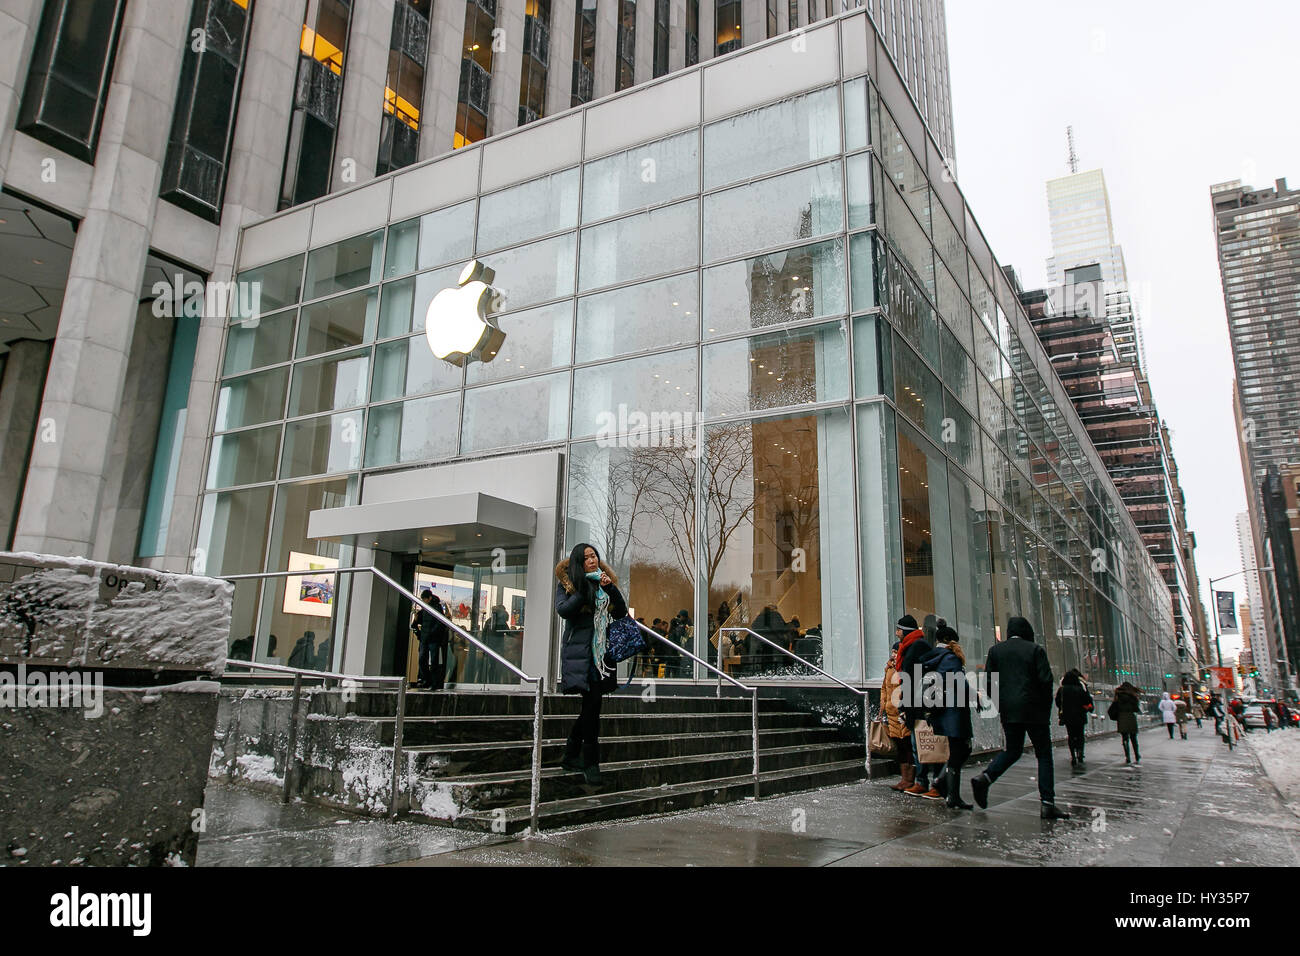 New York, Febbraio 9, 2017: la parte anteriore della Quinta Avenue Apple store è di nuovo la posizione precedentemente occupata dalla FAO Schwartz. Foto Stock